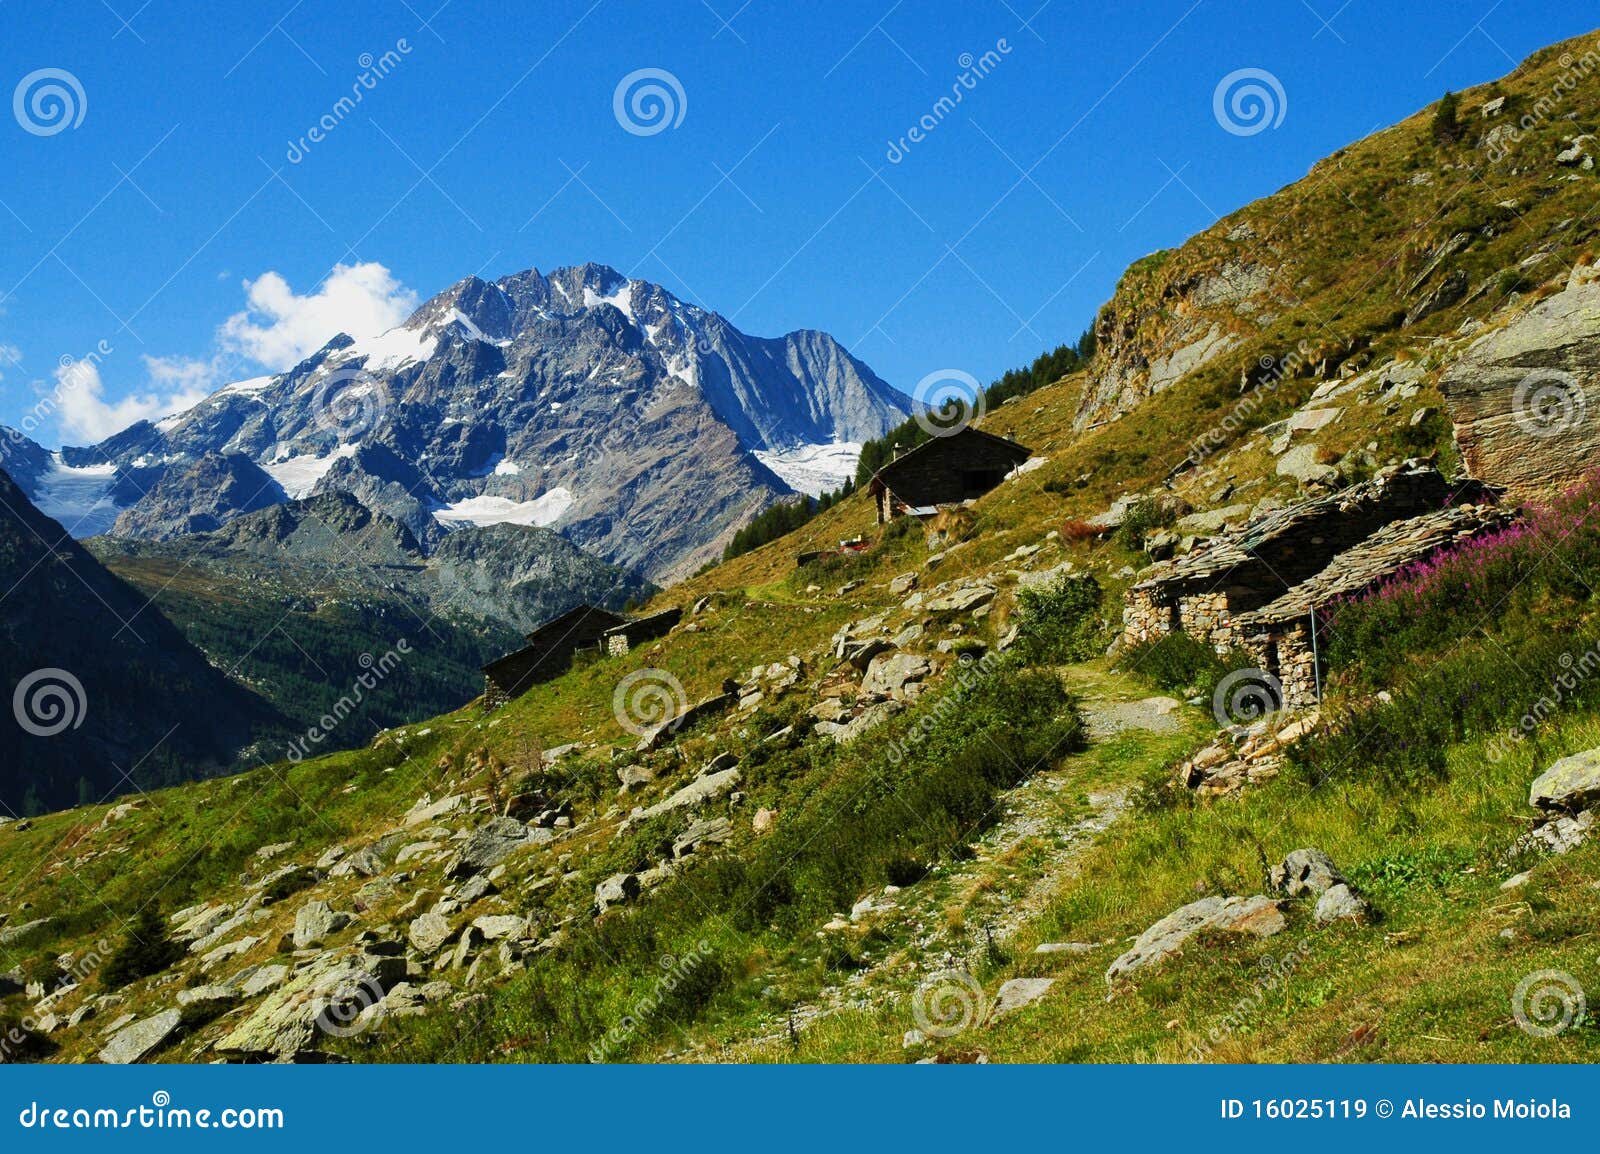 alpine landscape, monte disgrazia